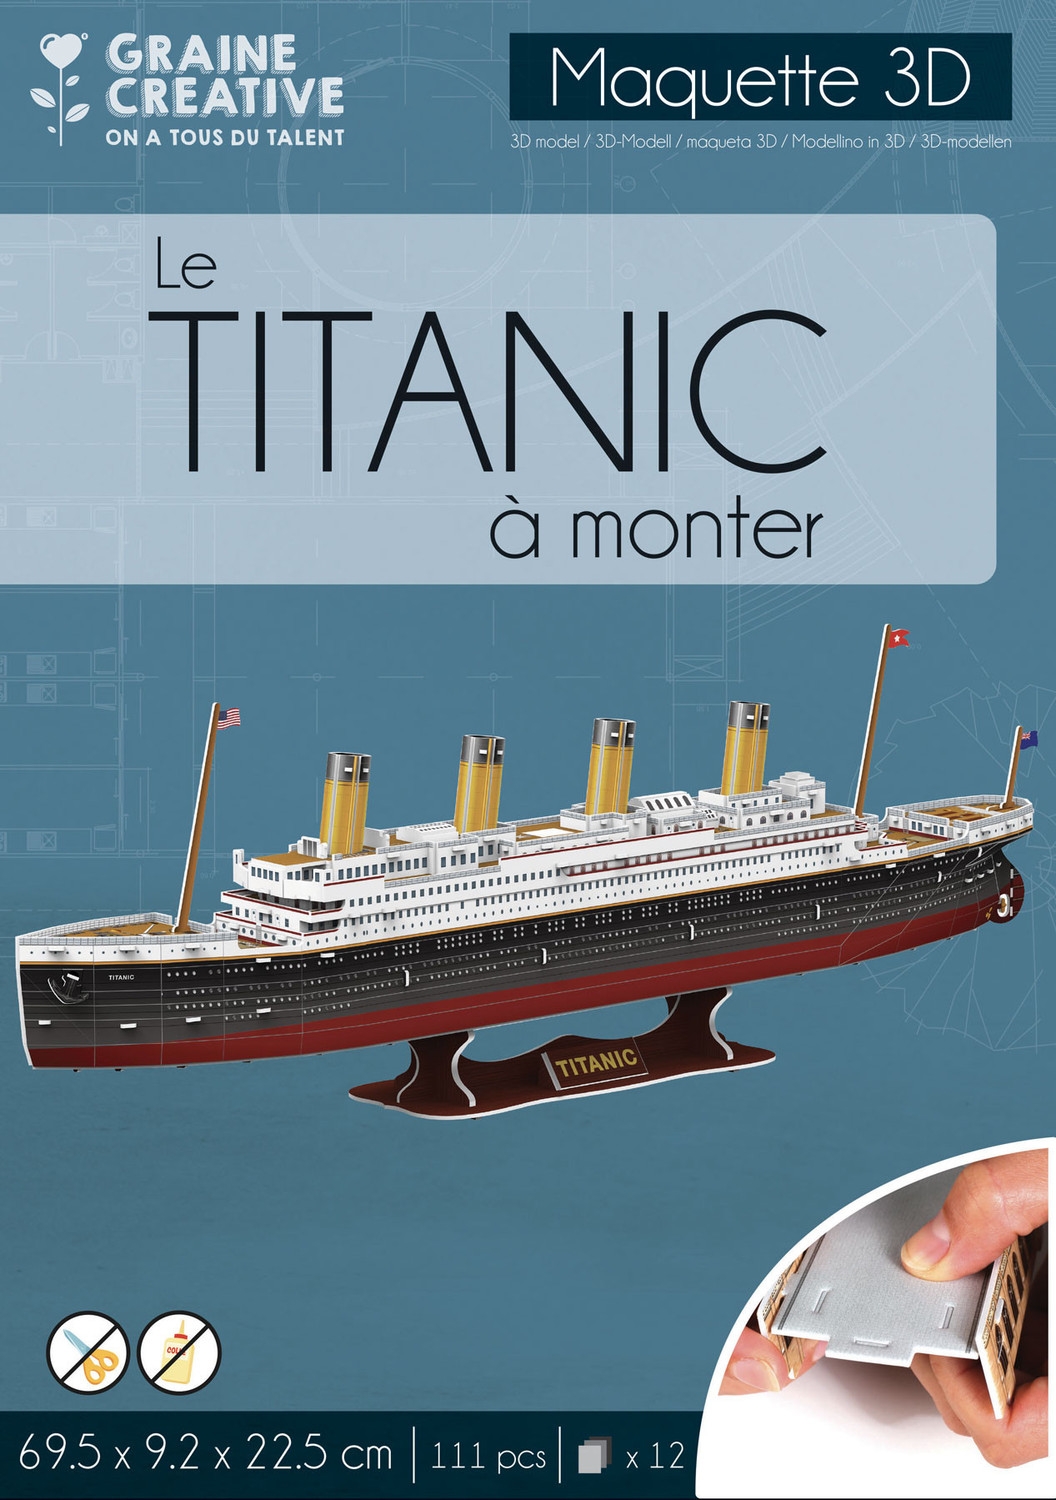 Puzzle D maquette Titanic - Graine créative référence 650906